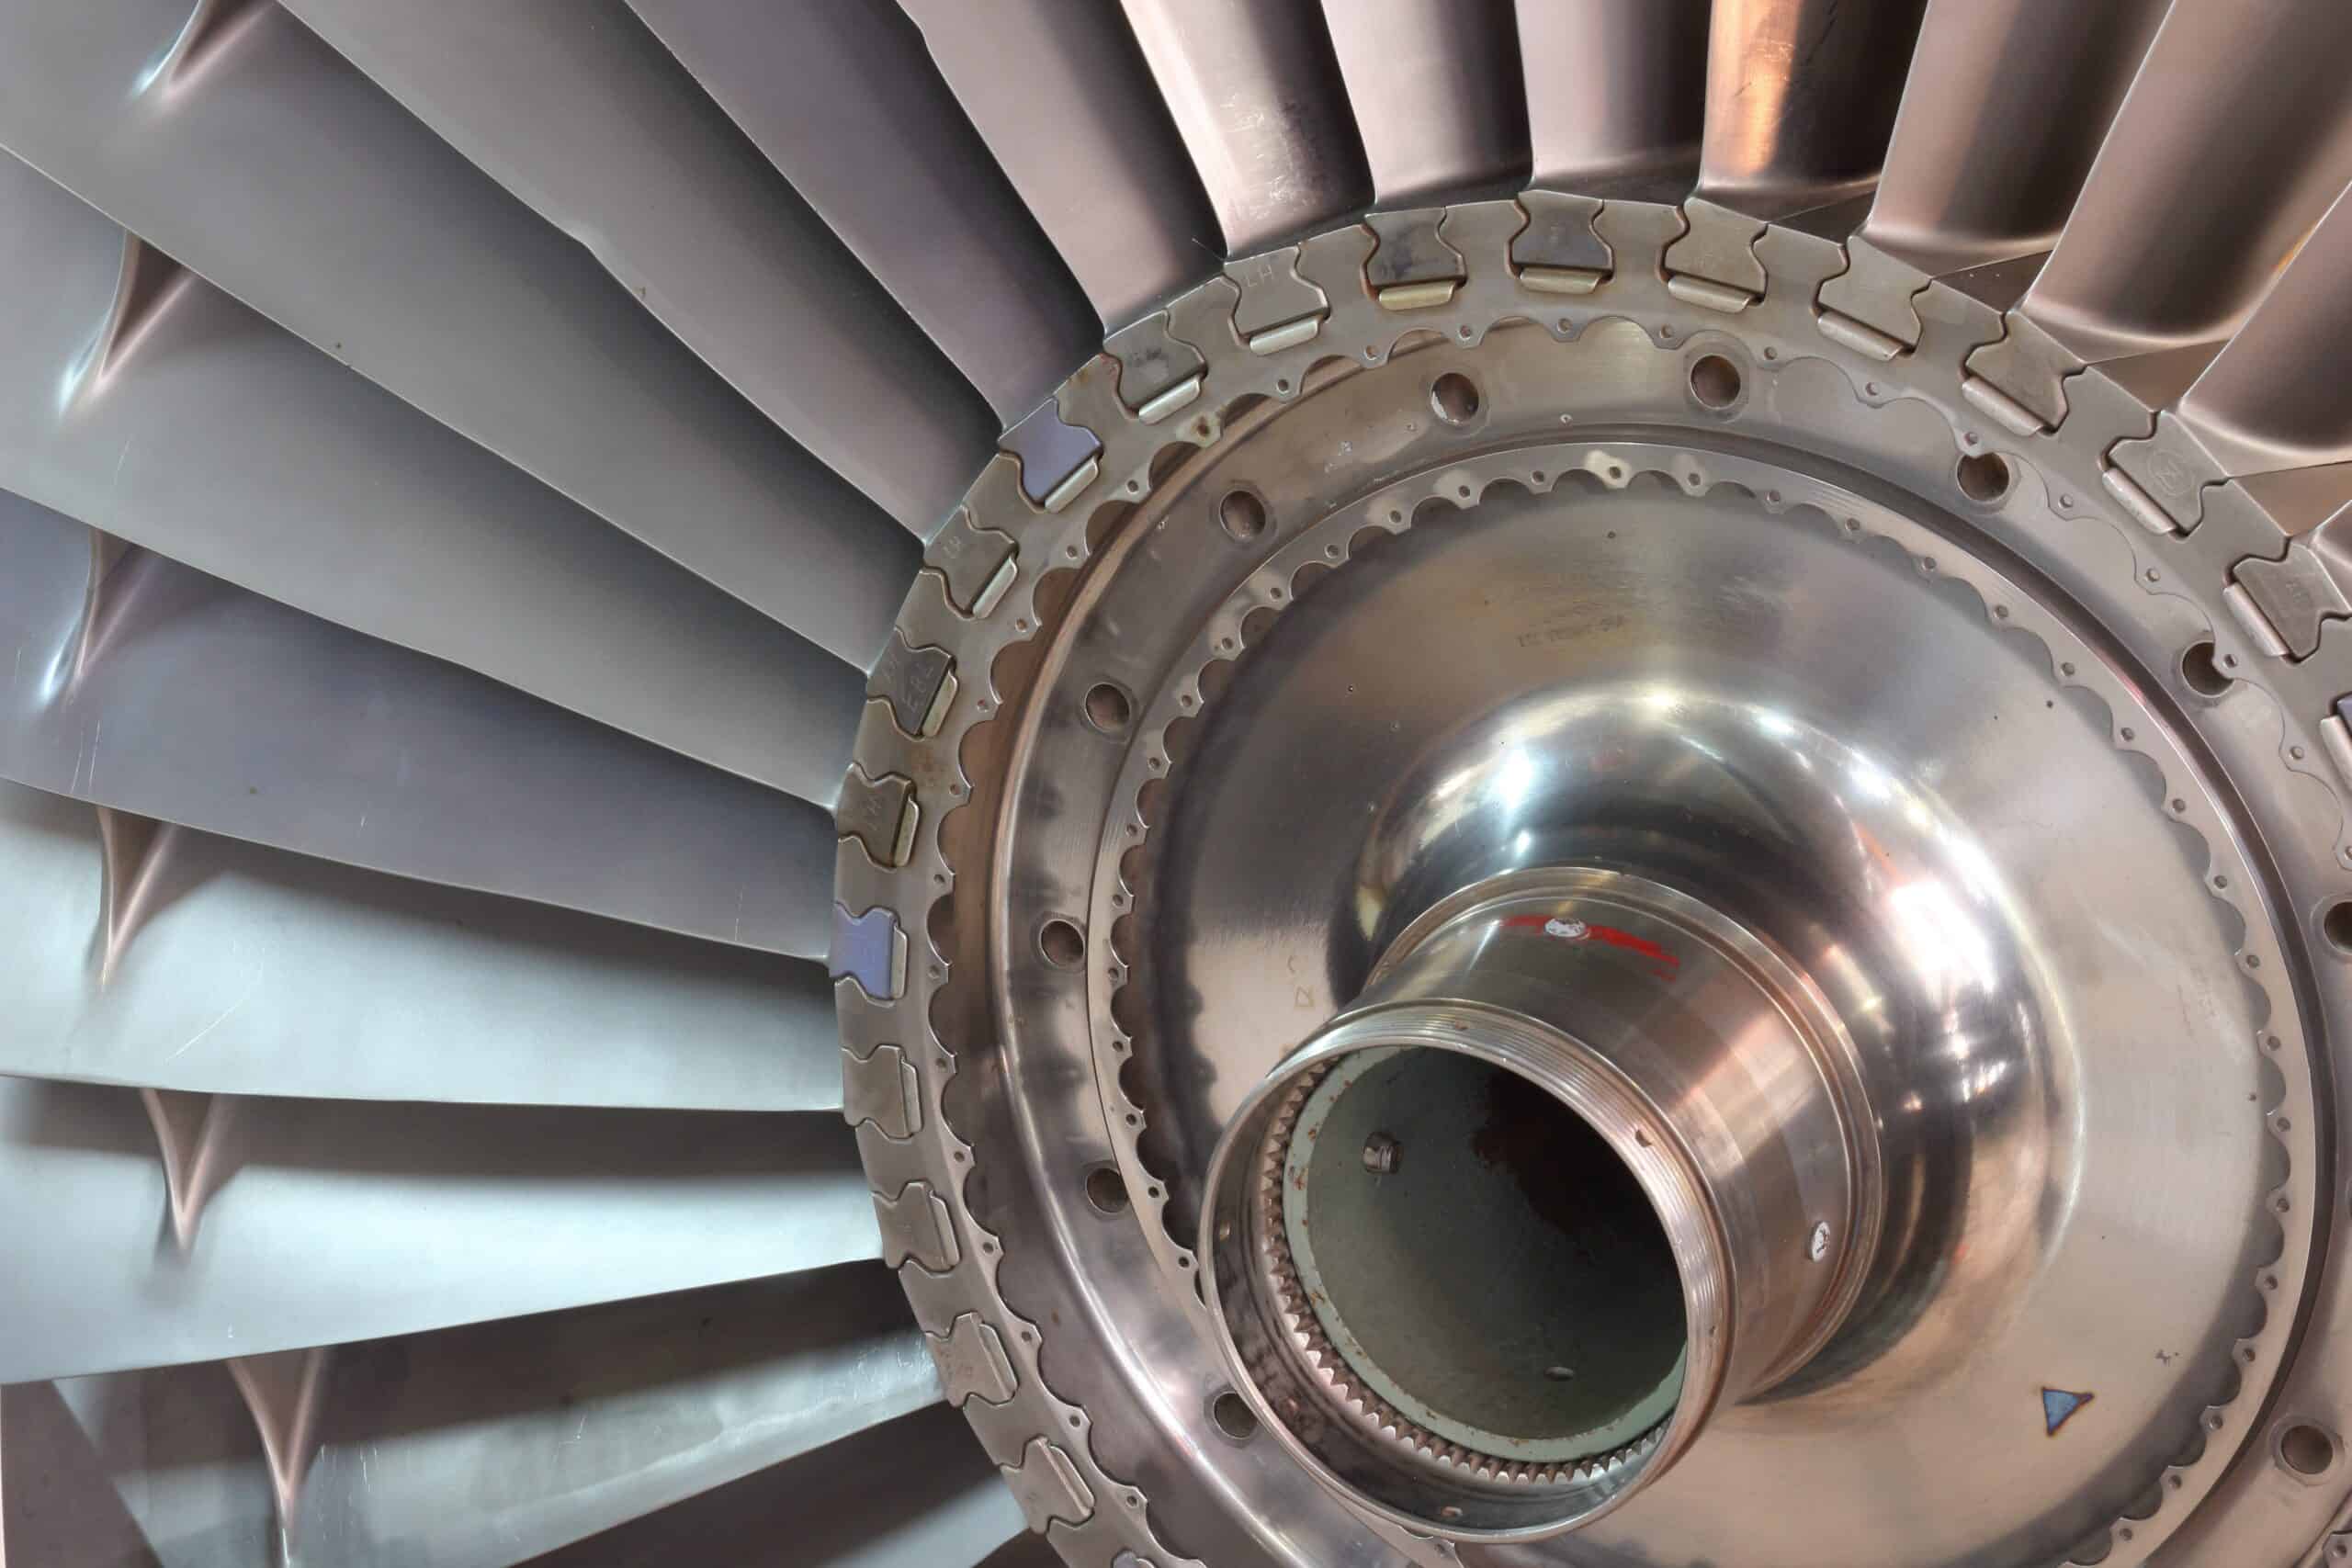 Turbine Engine Sales & Repair Management / Spares Support